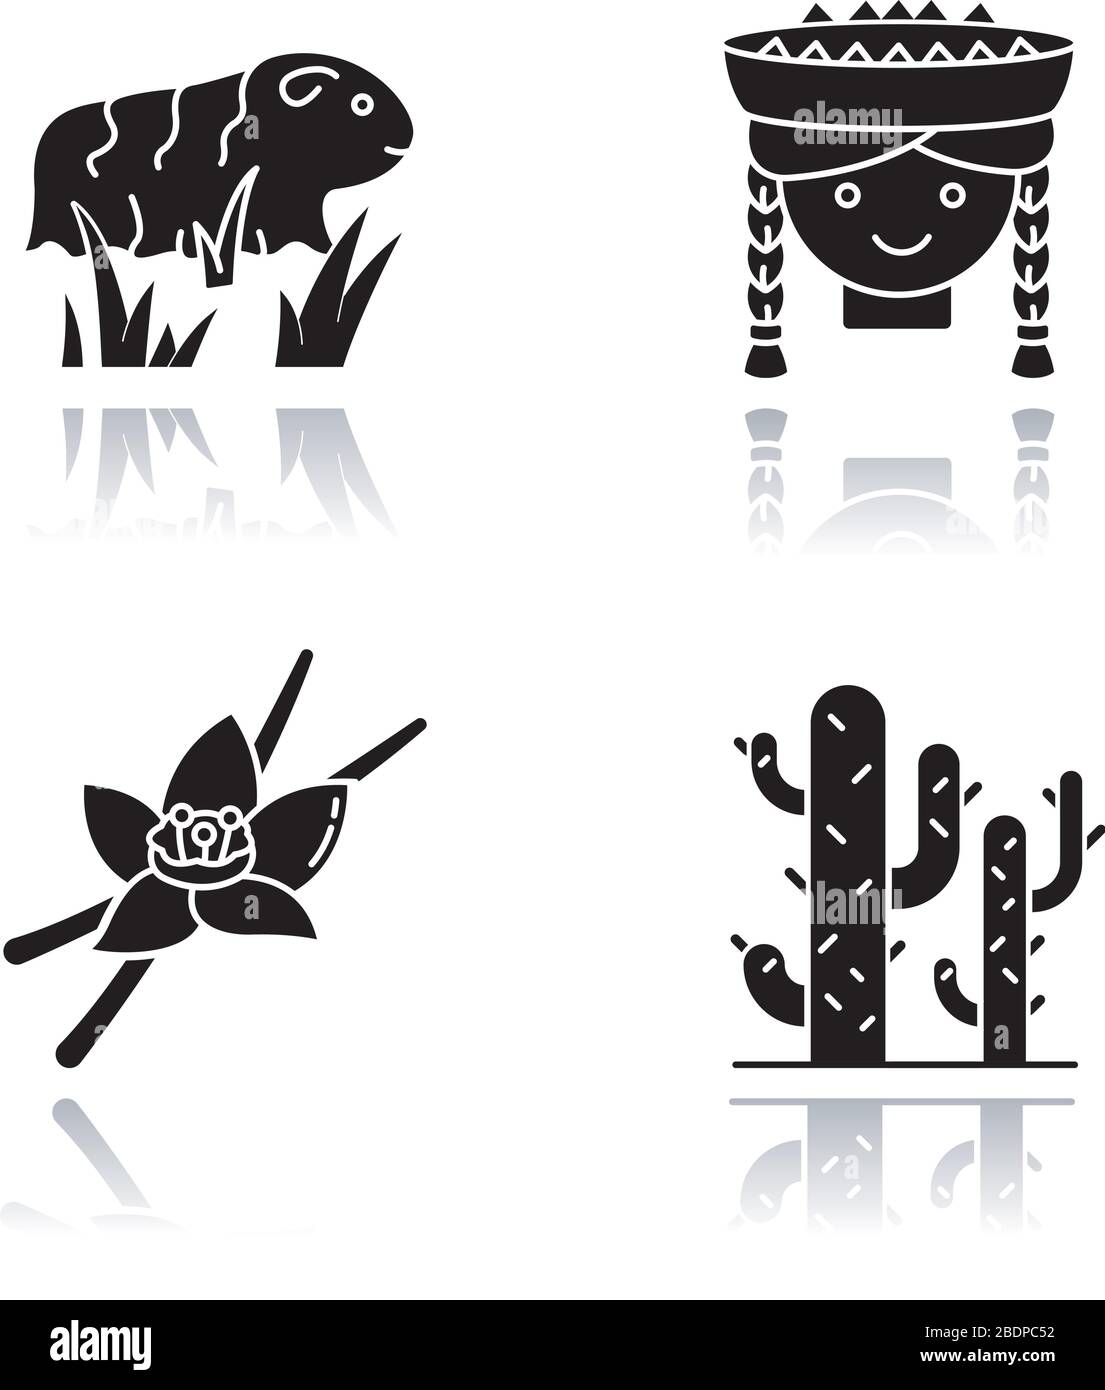 Región andina Imágenes de stock en blanco y negro - Alamy